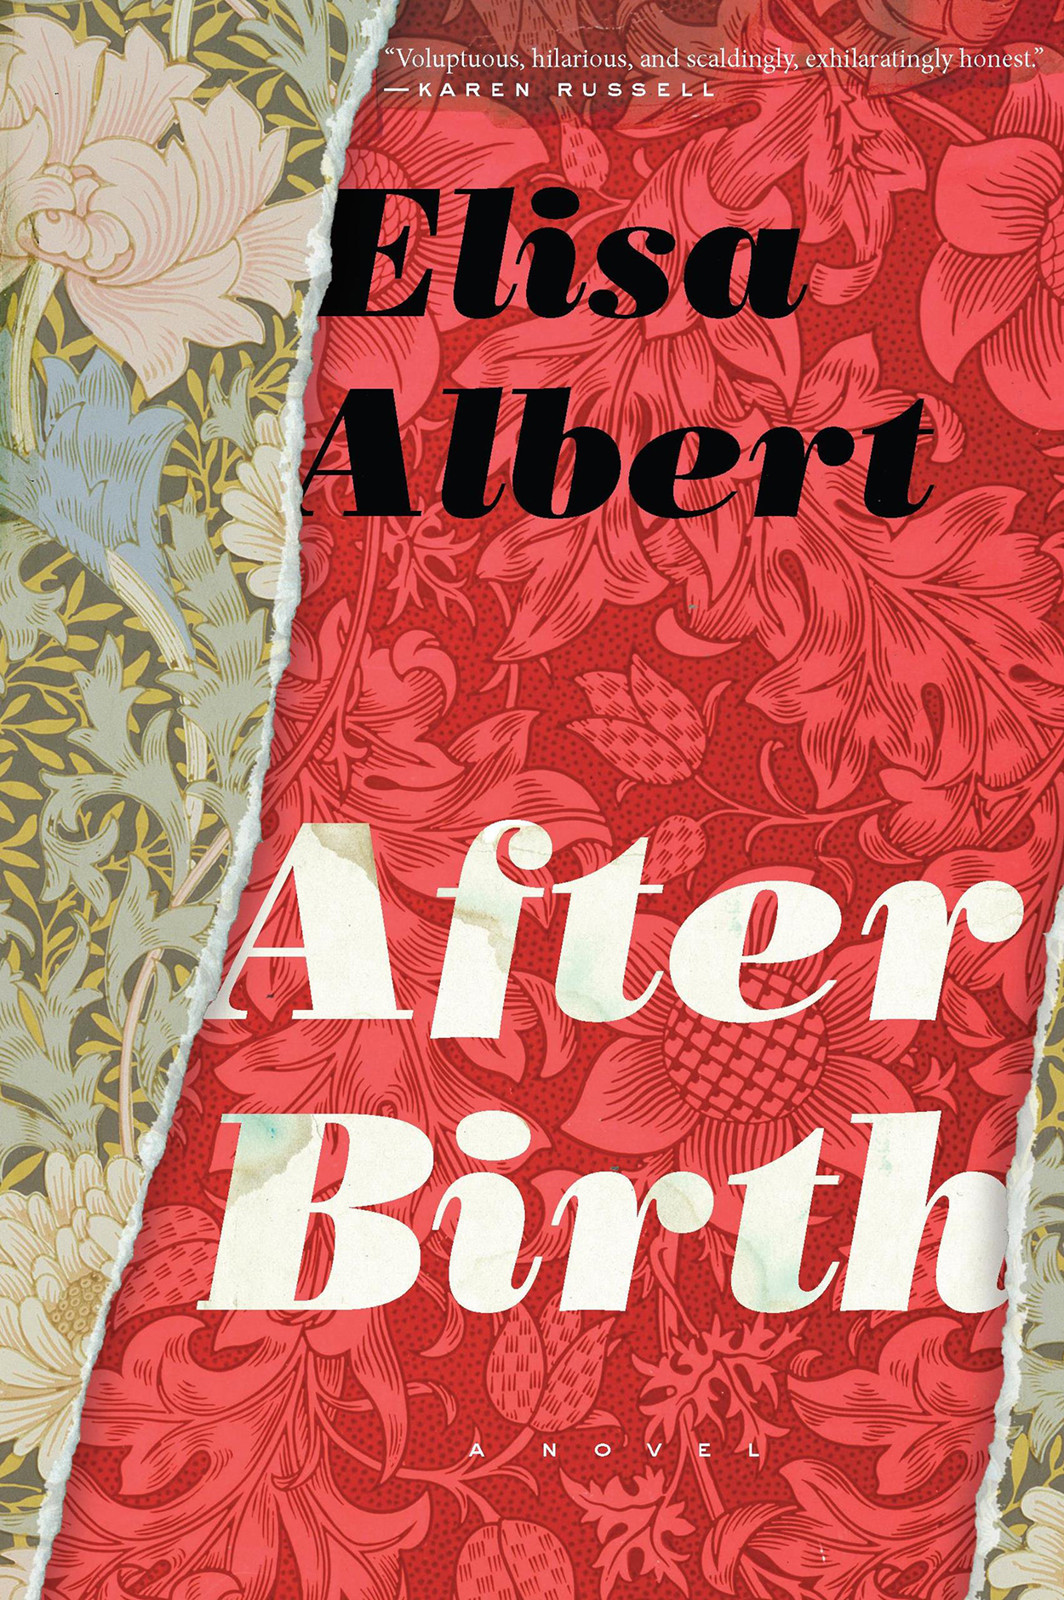 Albert Elisa - After Birth скачать бесплатно